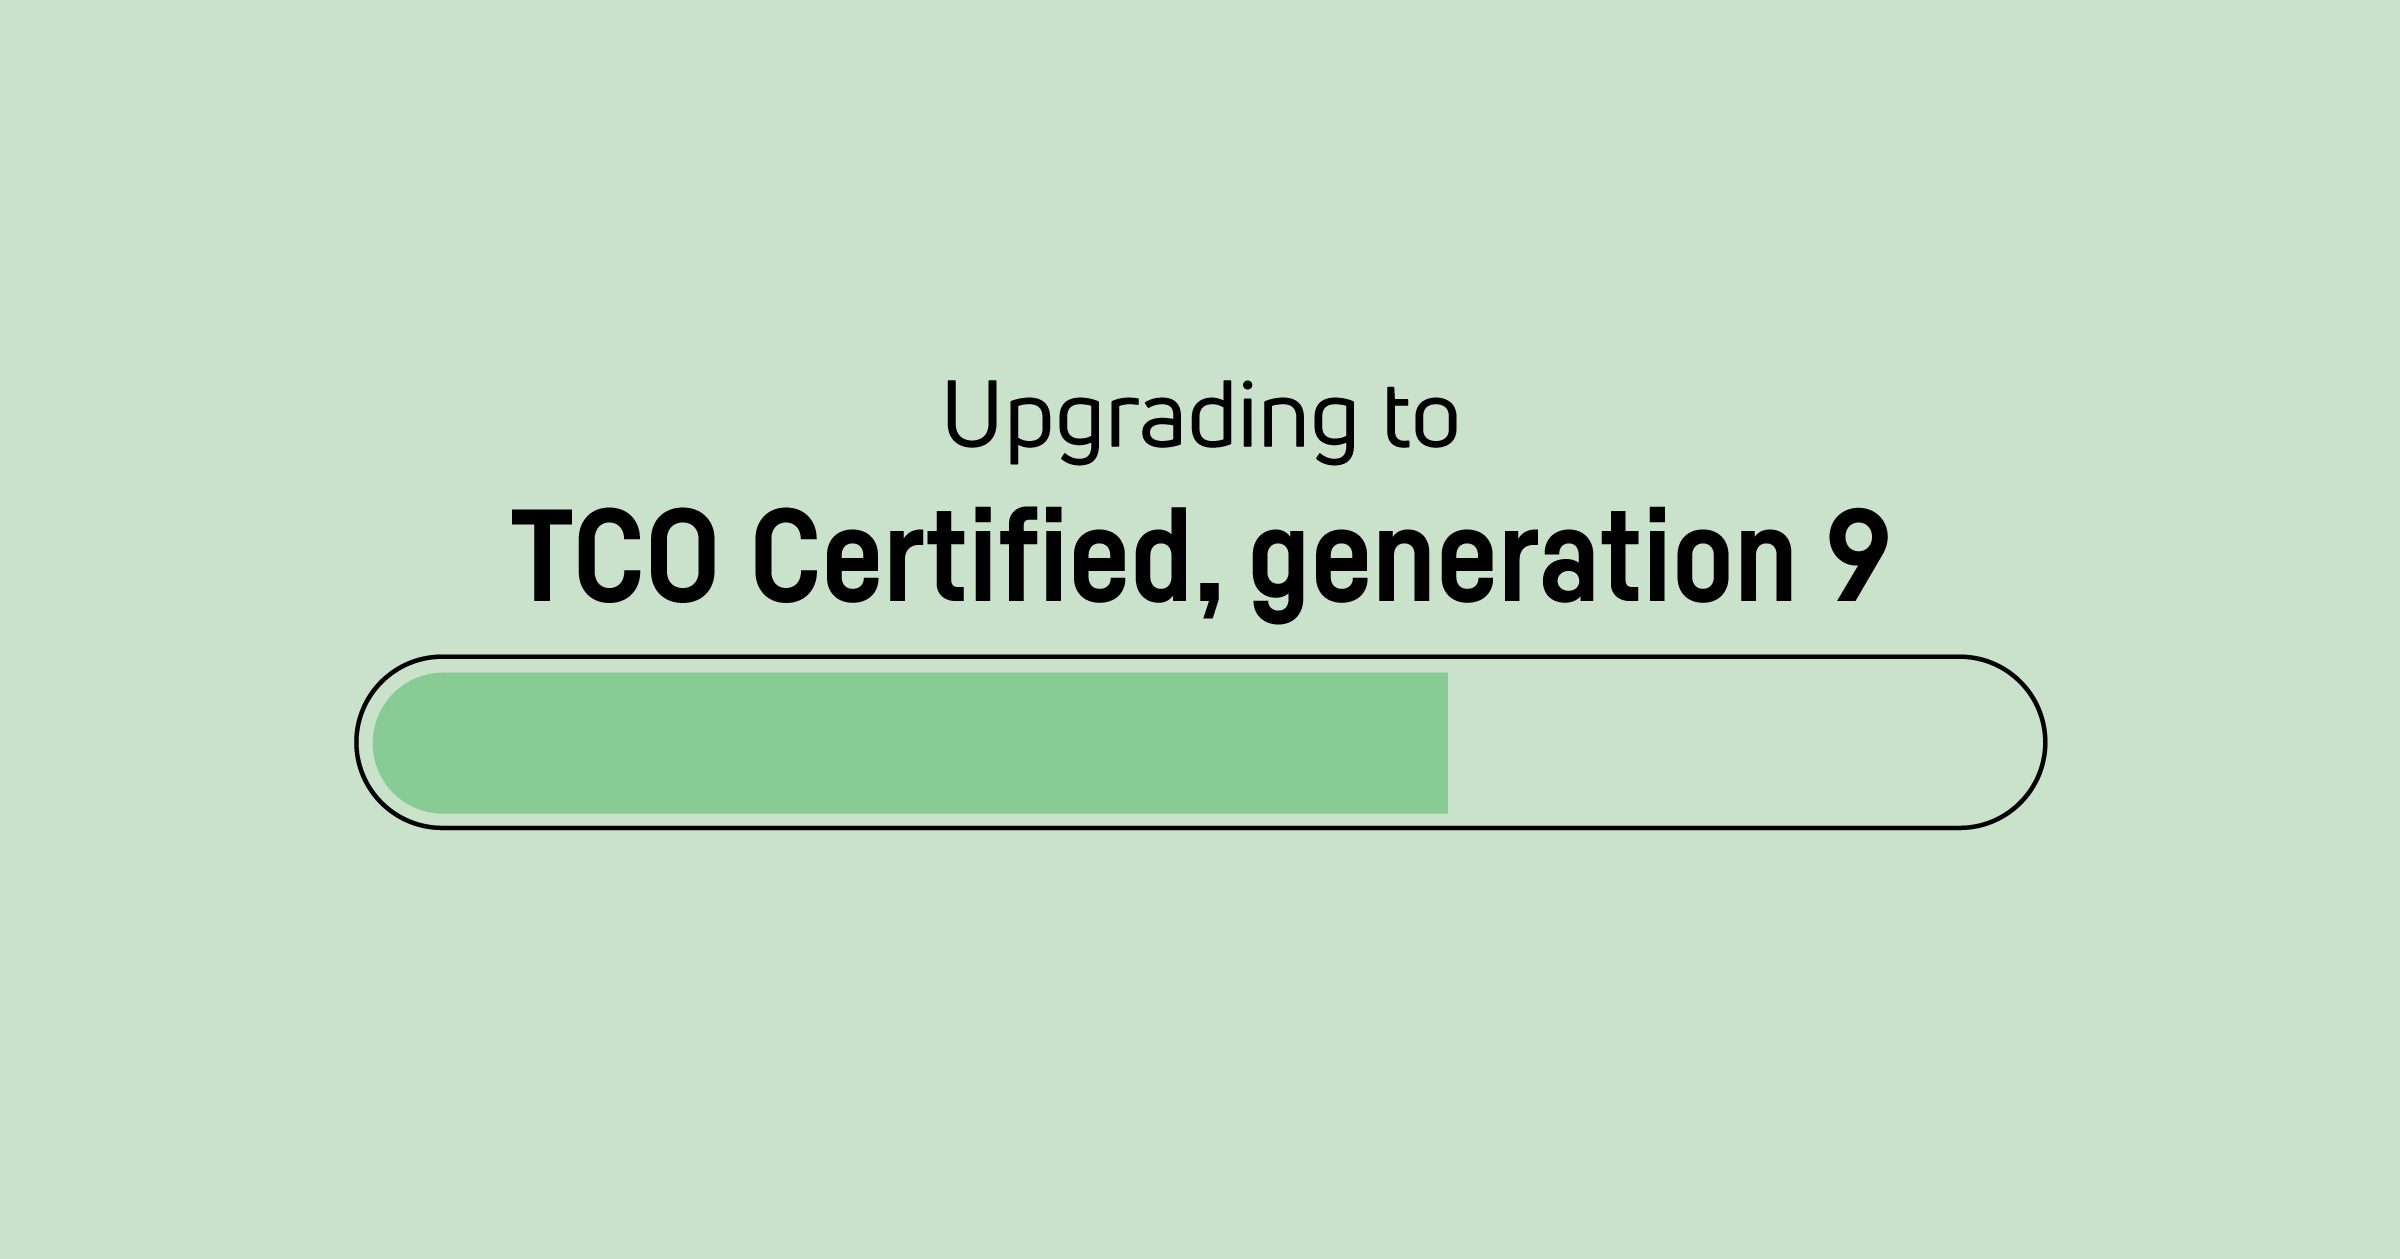 Tijd voor een upgrade van TCO Certified, generation 8 certificaten